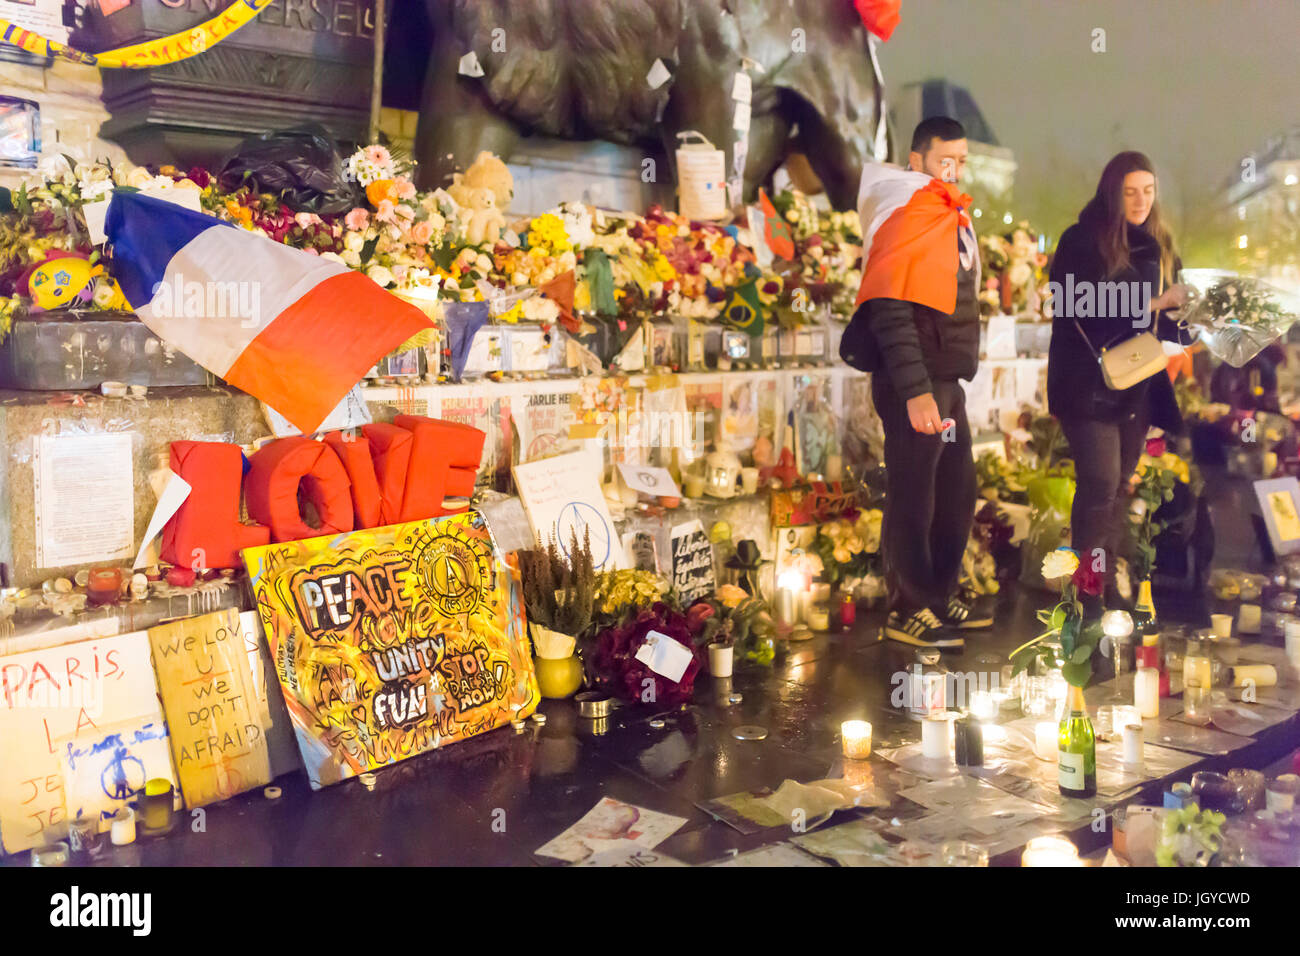 L'amour. Hommage spontané à des victimes des attaques terroristes à Paris le 13 novembre 2015. Banque D'Images